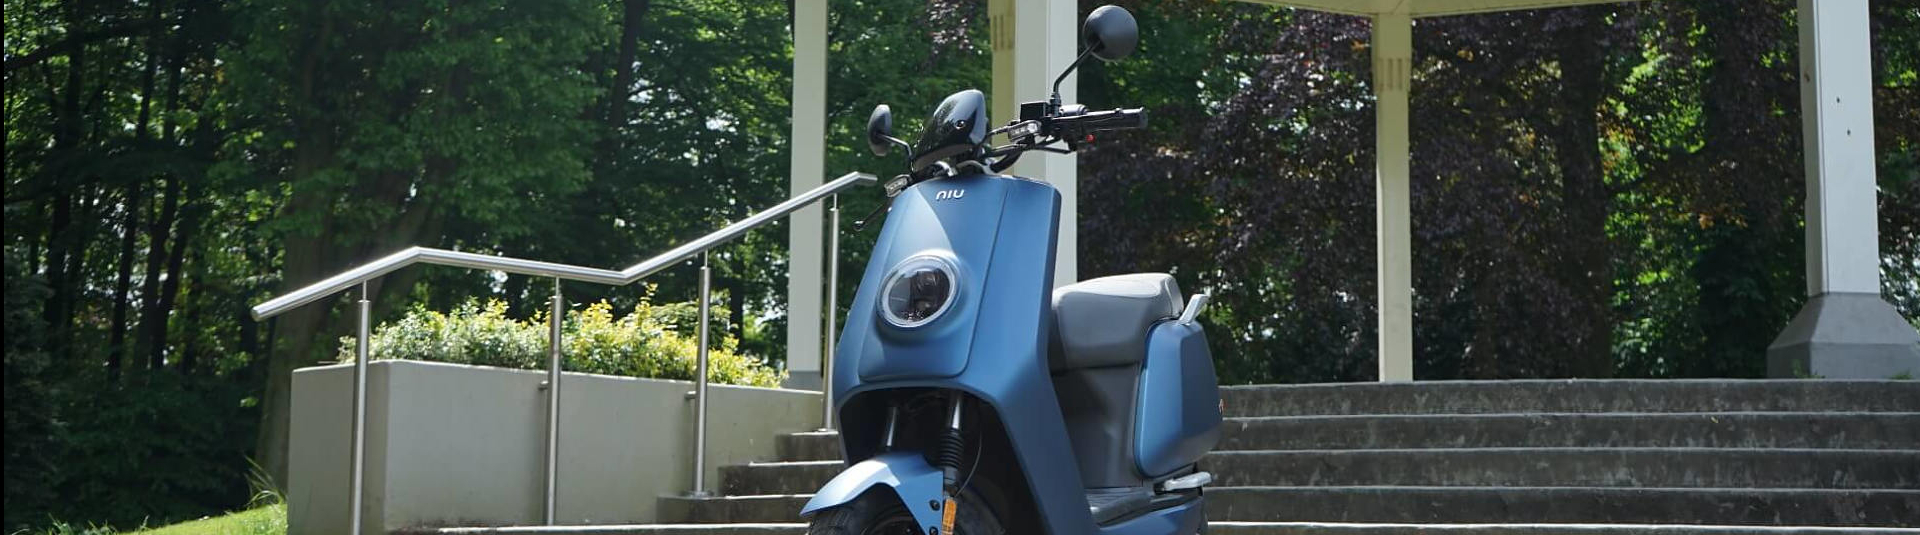 Jouw elektrische scooter leasen via Scooterplan 